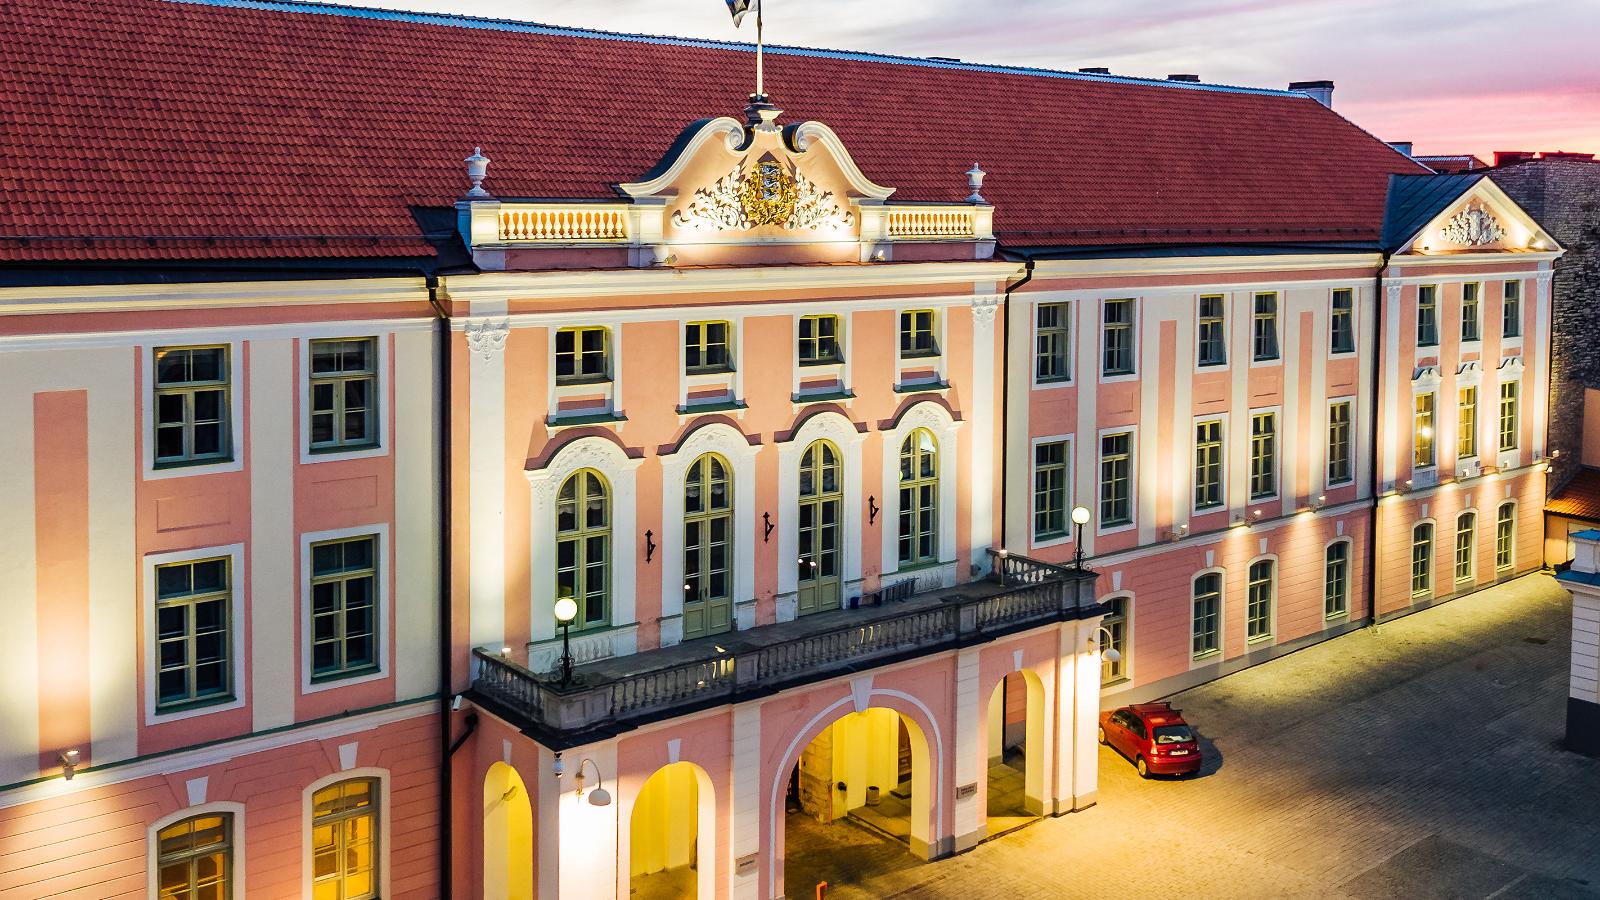 Palacio de Jelgava o Palacio de Mitava